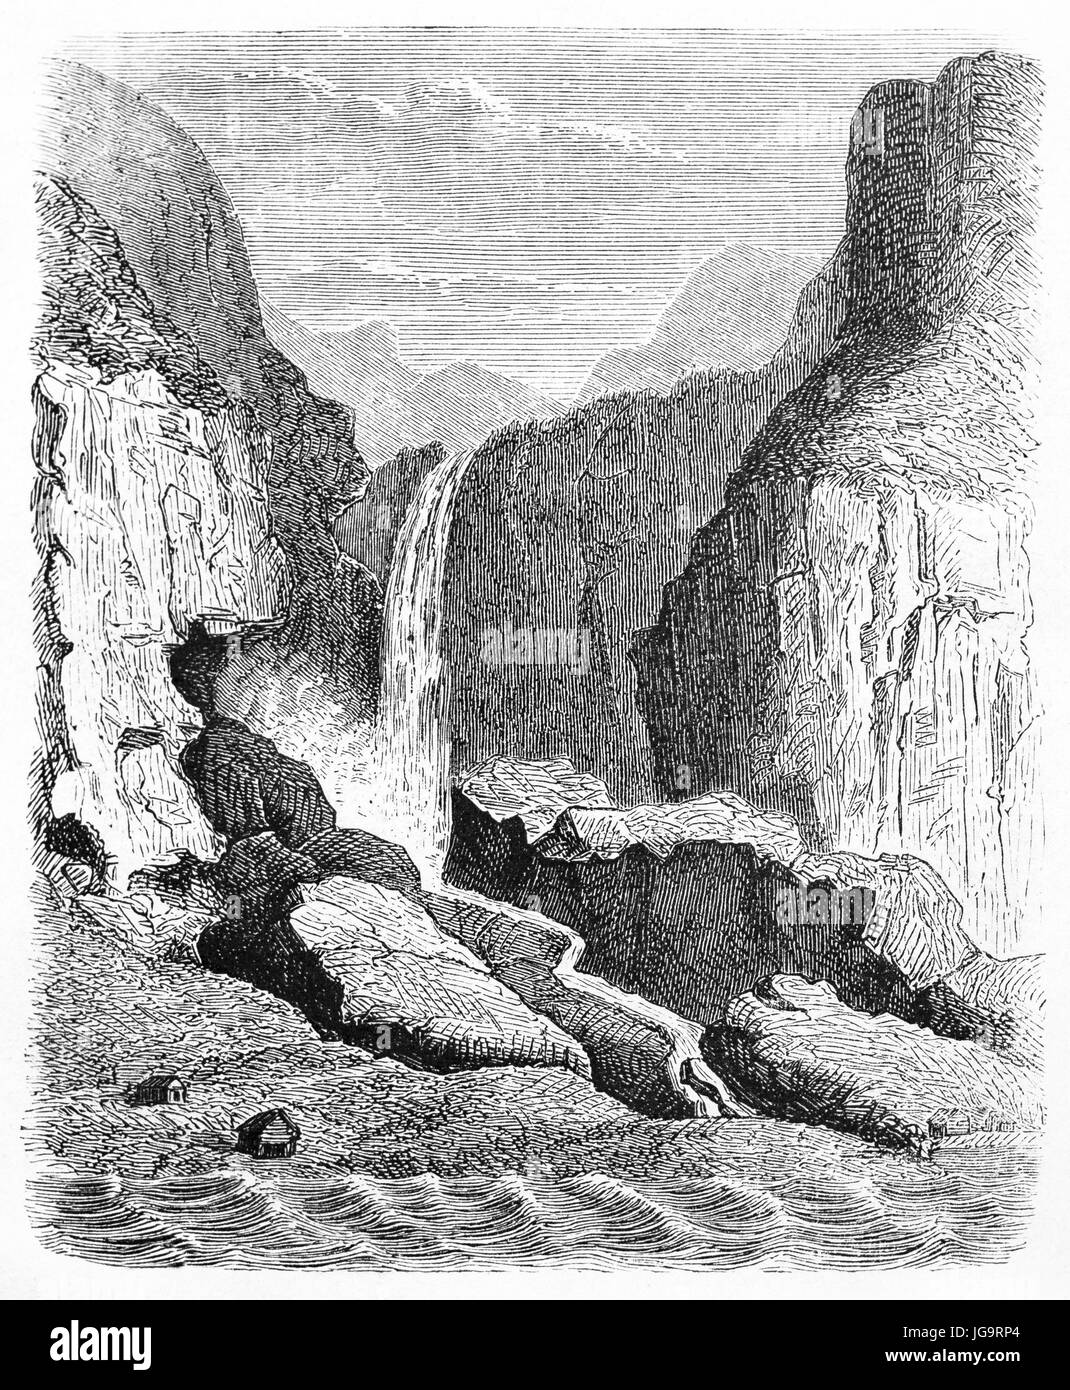 Opthun Wasserfälle, Norwegen, zwischen Felsen vor Teil des Ufers und Wasser. Alte graue Ton Radierung Stil Kunst von nicht identifizierten Autor, 1861 Stockfoto